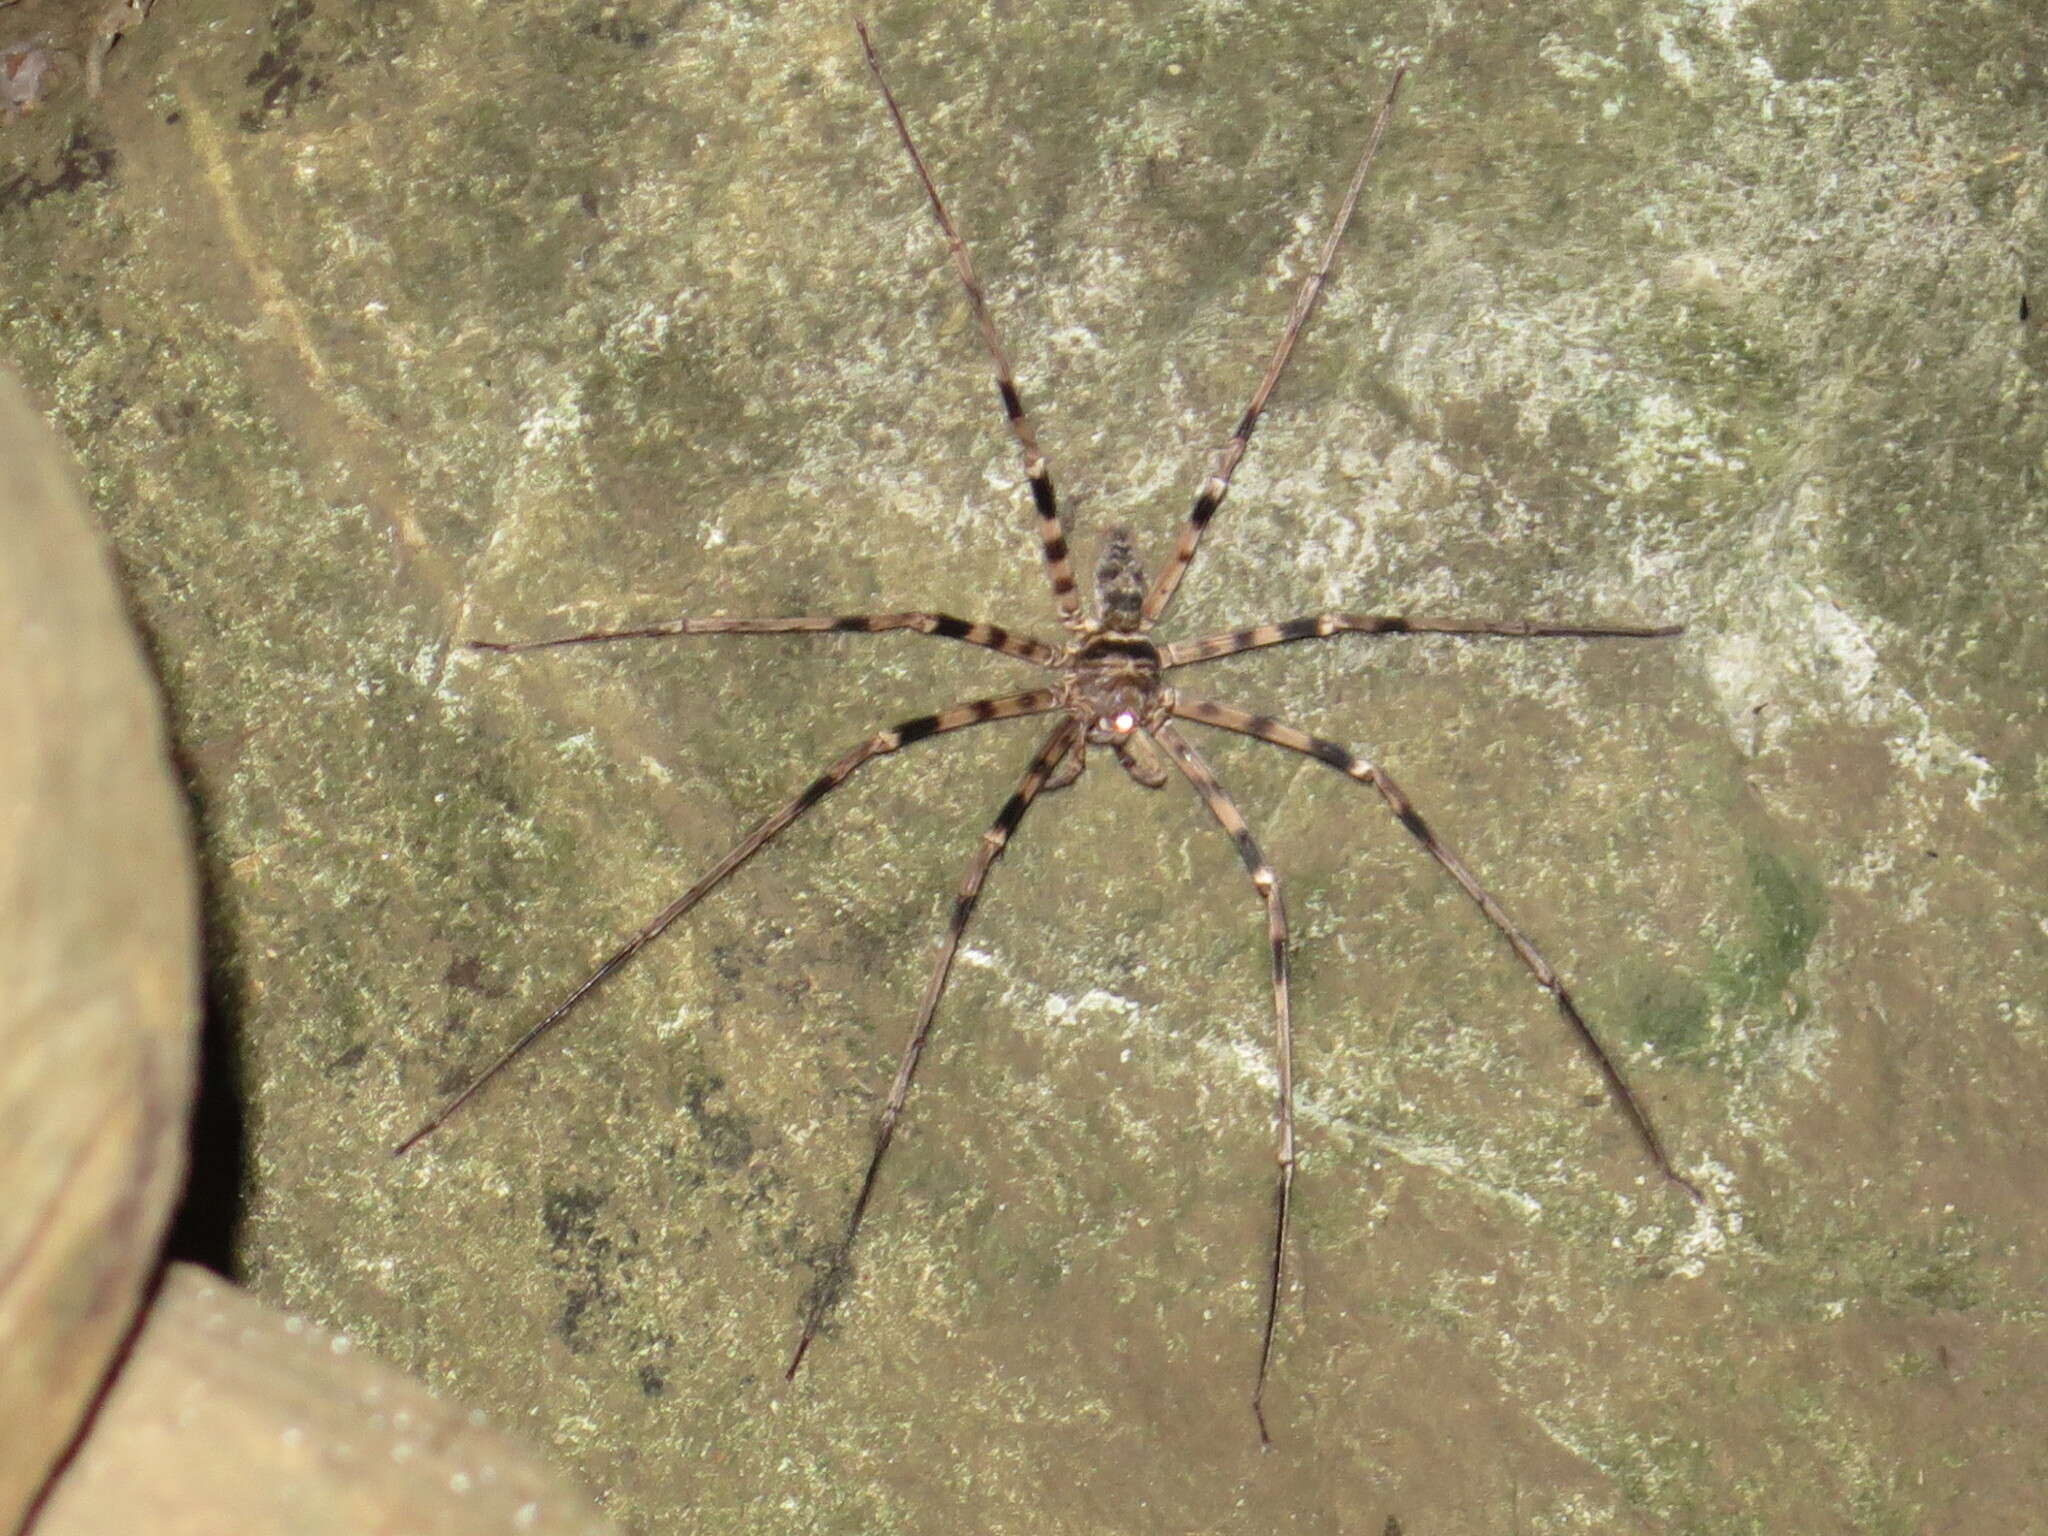 Image of Giant huntsman spider